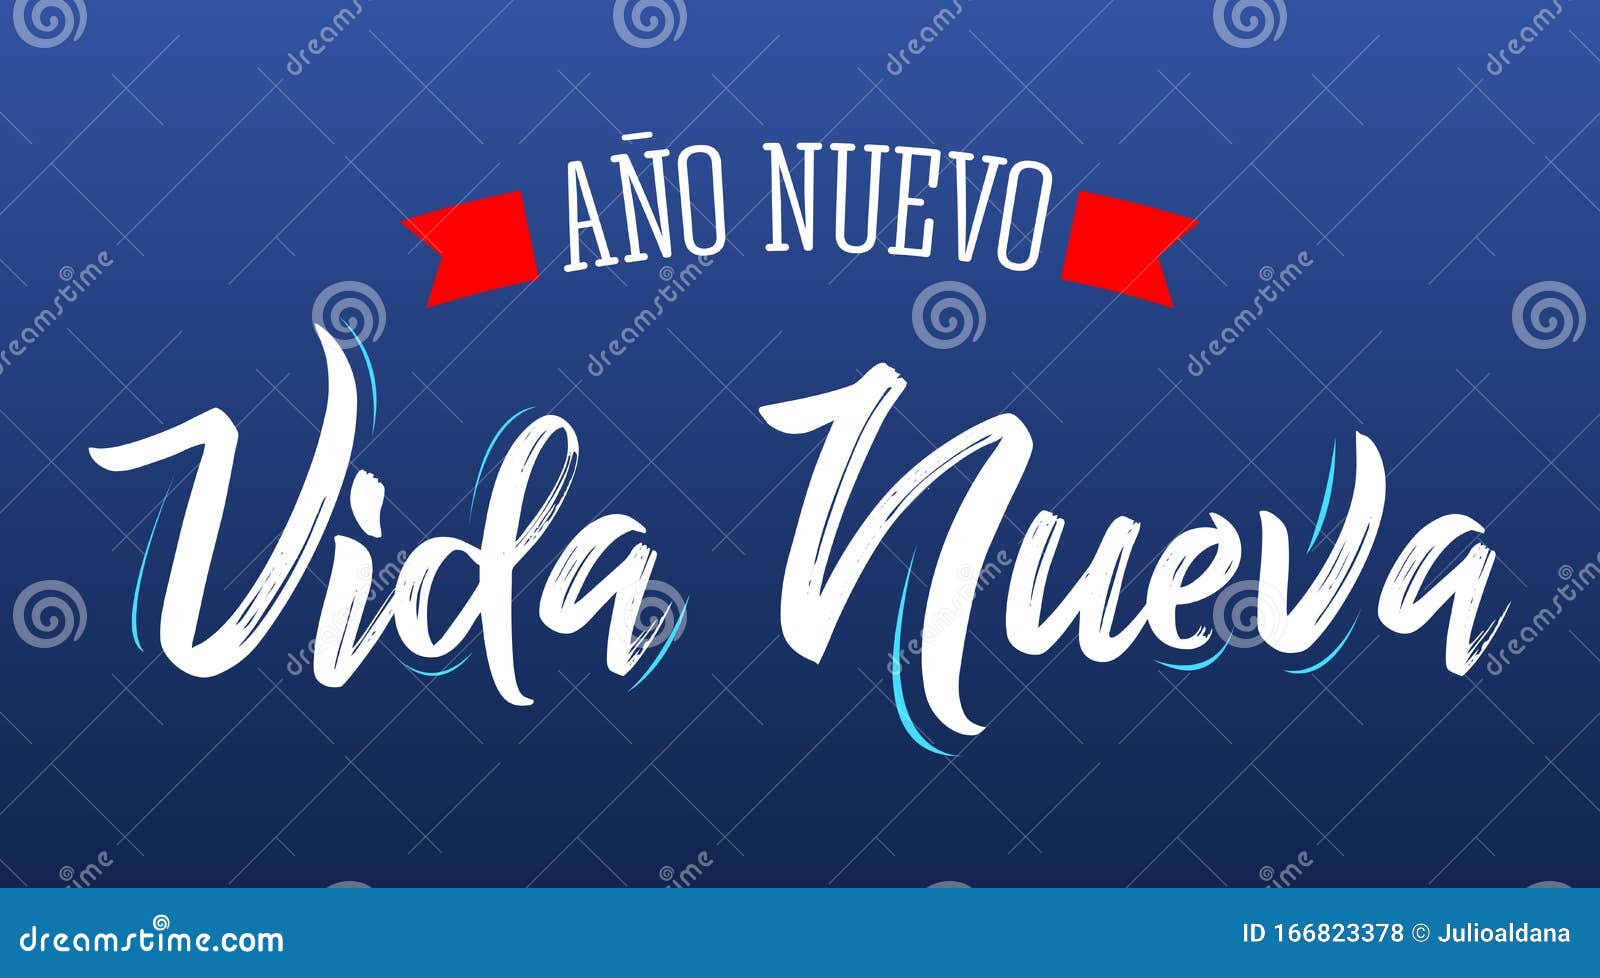 ano nuevo vida nueva, new year new life spanish text  .